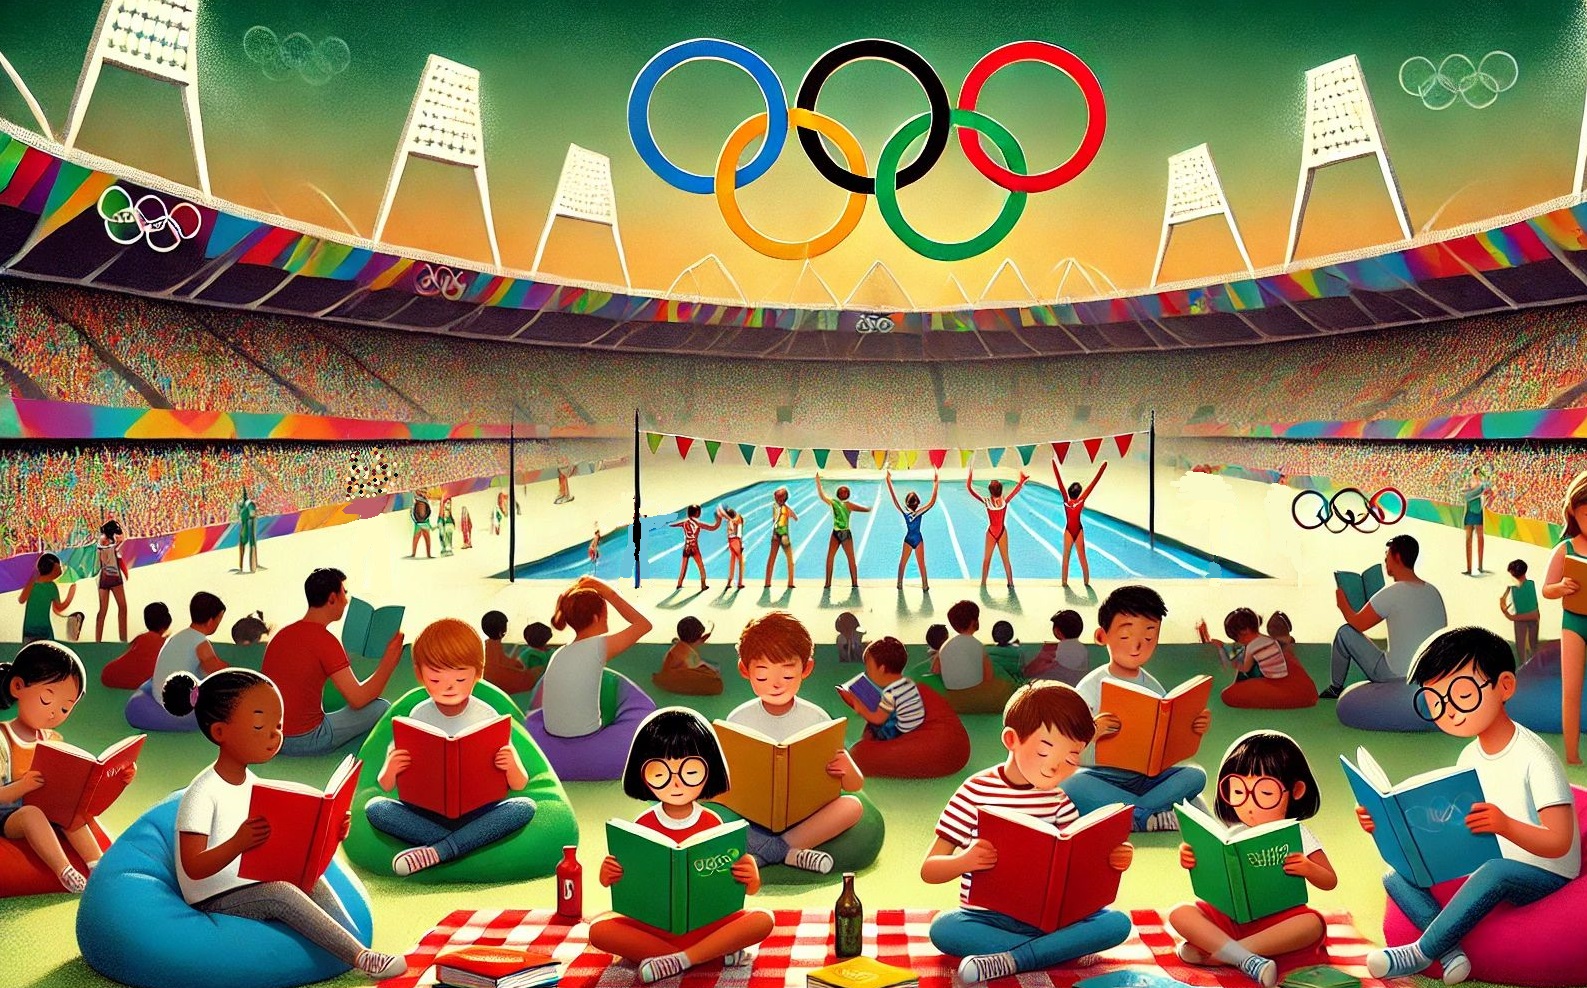 Auf dem von einer KI generierten Bild sind viele Menschen in einem Stadion zu sehen. In der Mitte, unter den olympischen Ringen, ist ein Schwimmbecken mit Sportlerinnen und Sportlern. Im Vordergrund sitzen viele Menschen verschiedenen Alters auf Decken und im Gras und lesen.